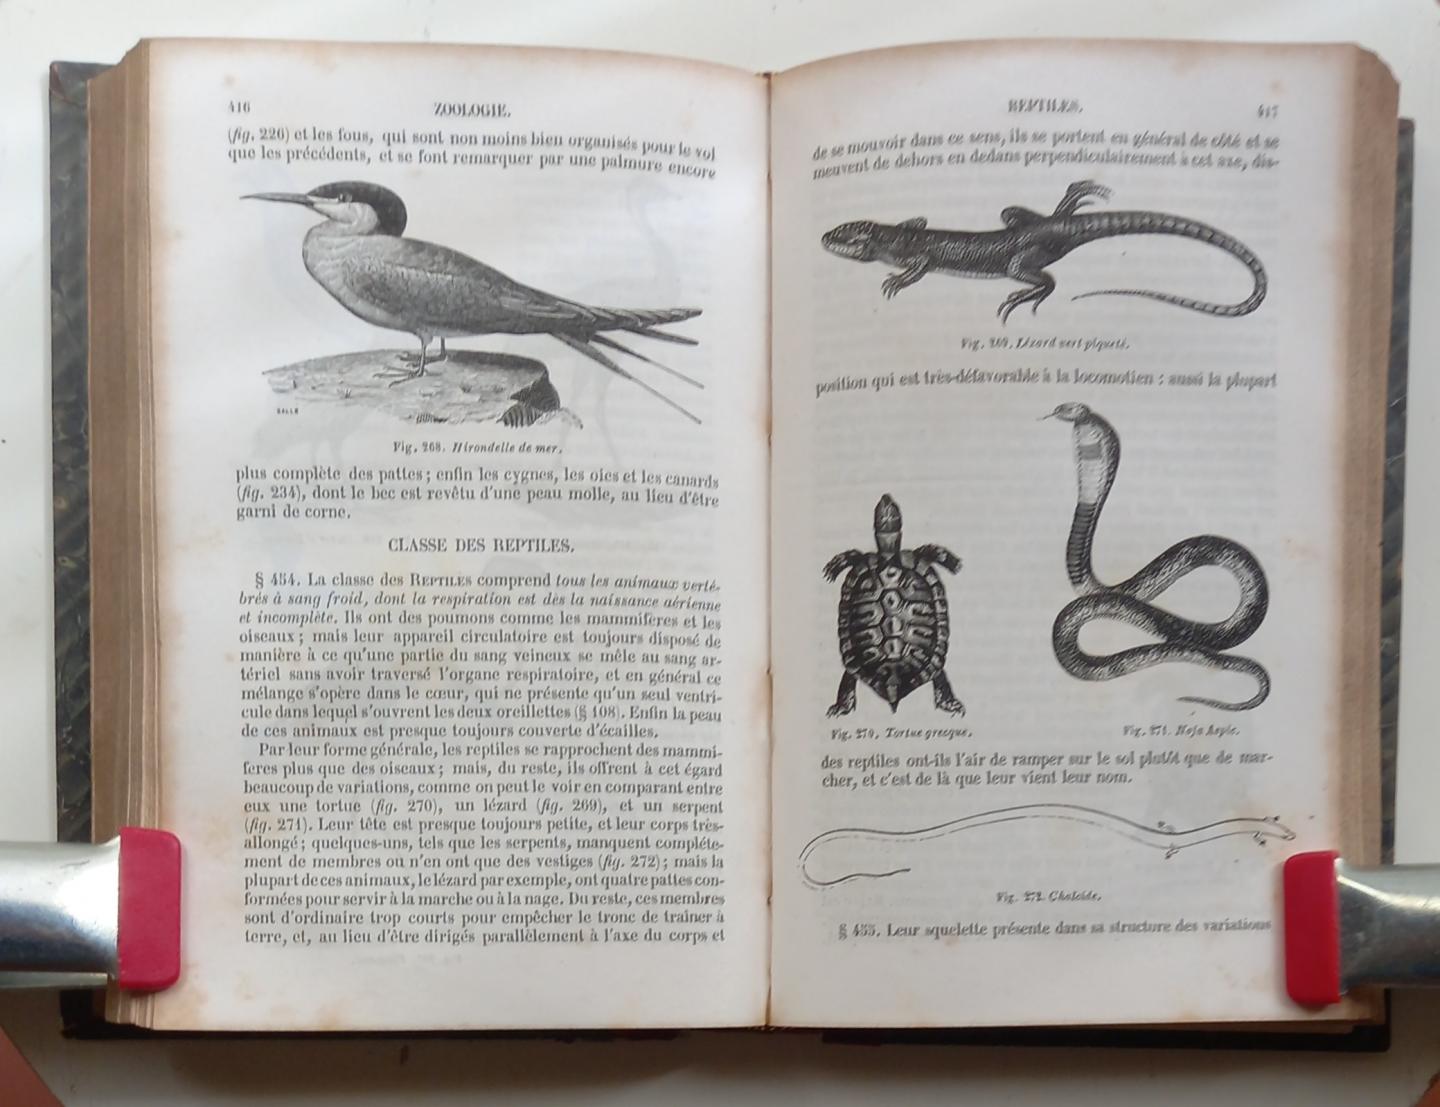 Edwards, Mm. Milne - Zoologie (Cours élémentaire d'histoire naturelle)